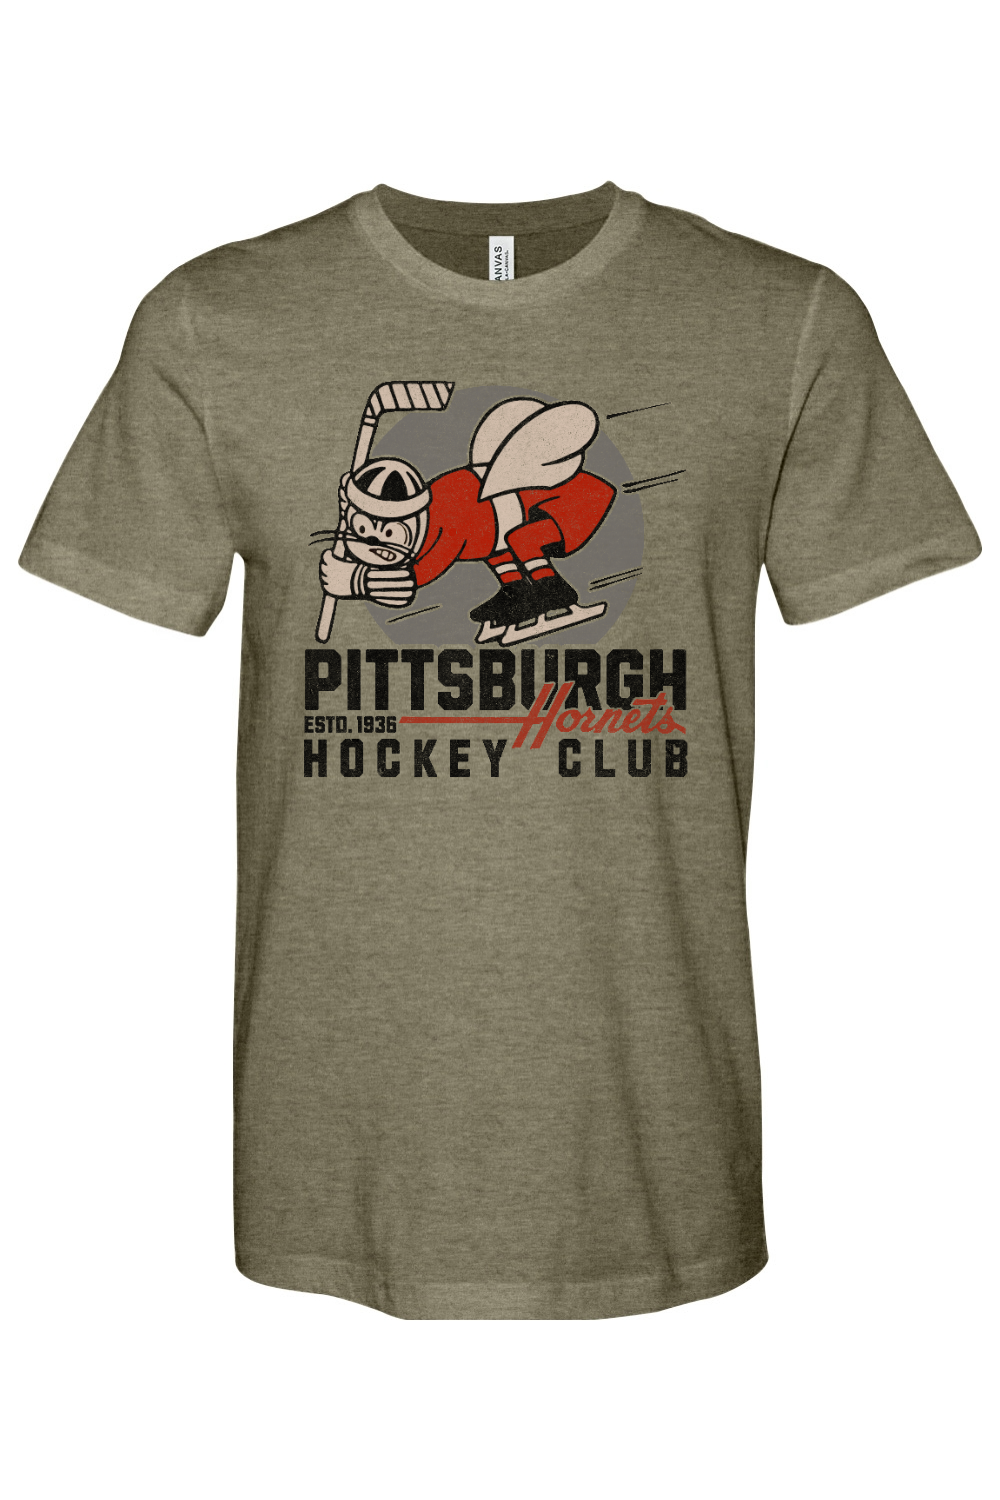 Pittsburgh Hornets Hockey - 1936 - Yinzylvania